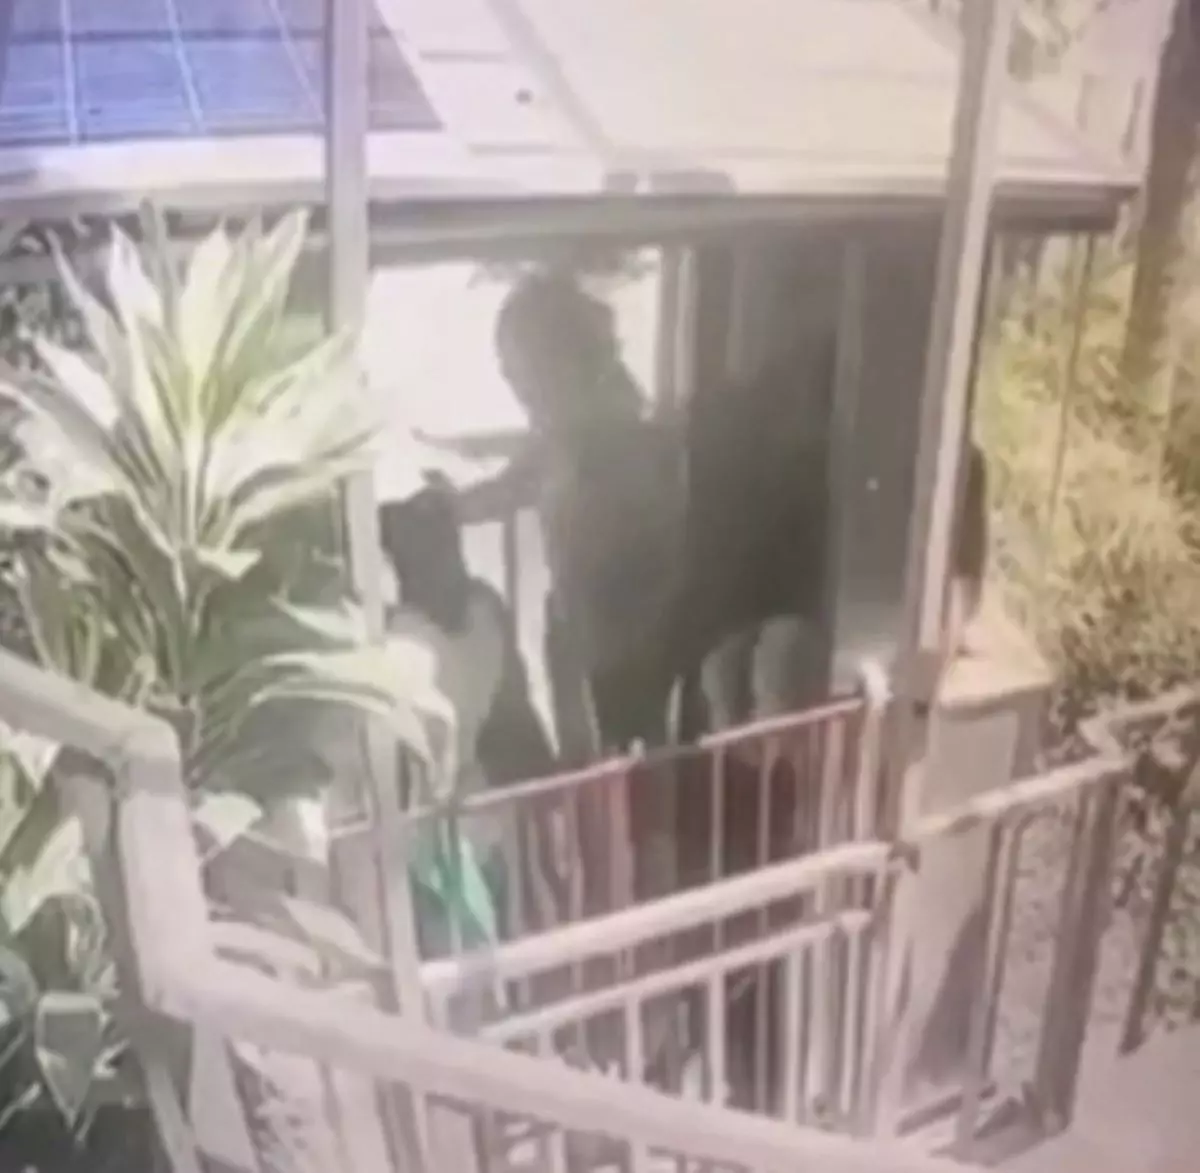 Vídeo: elevador despenca e mata cinco pessoas em resort de luxo